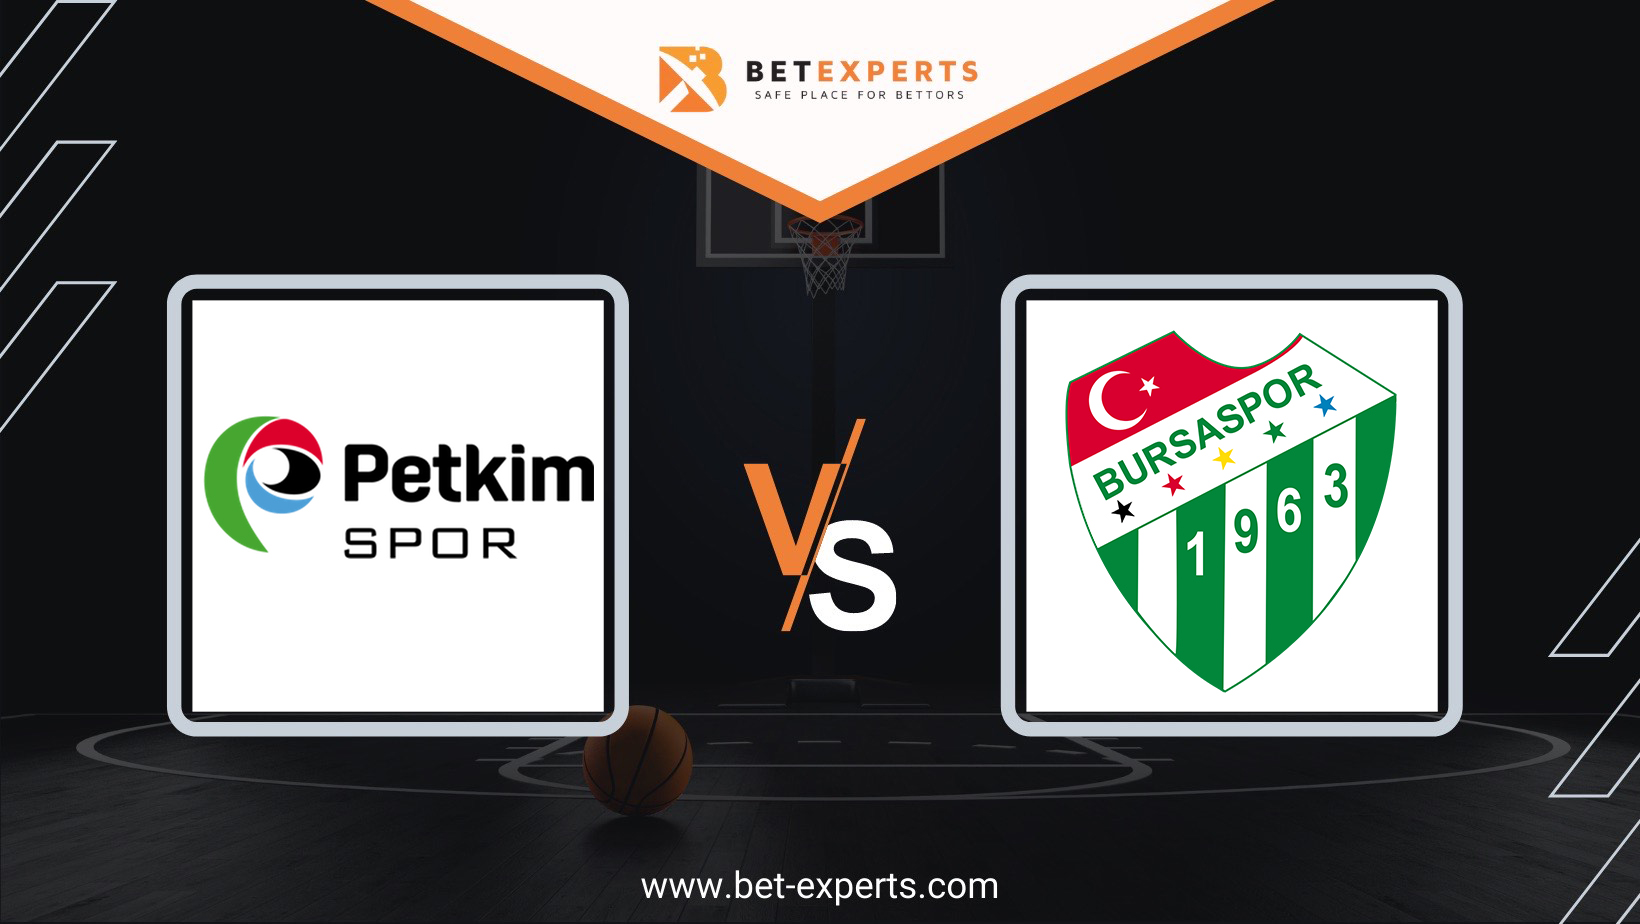 Petkim Spor vs. Bursaspor Prediction